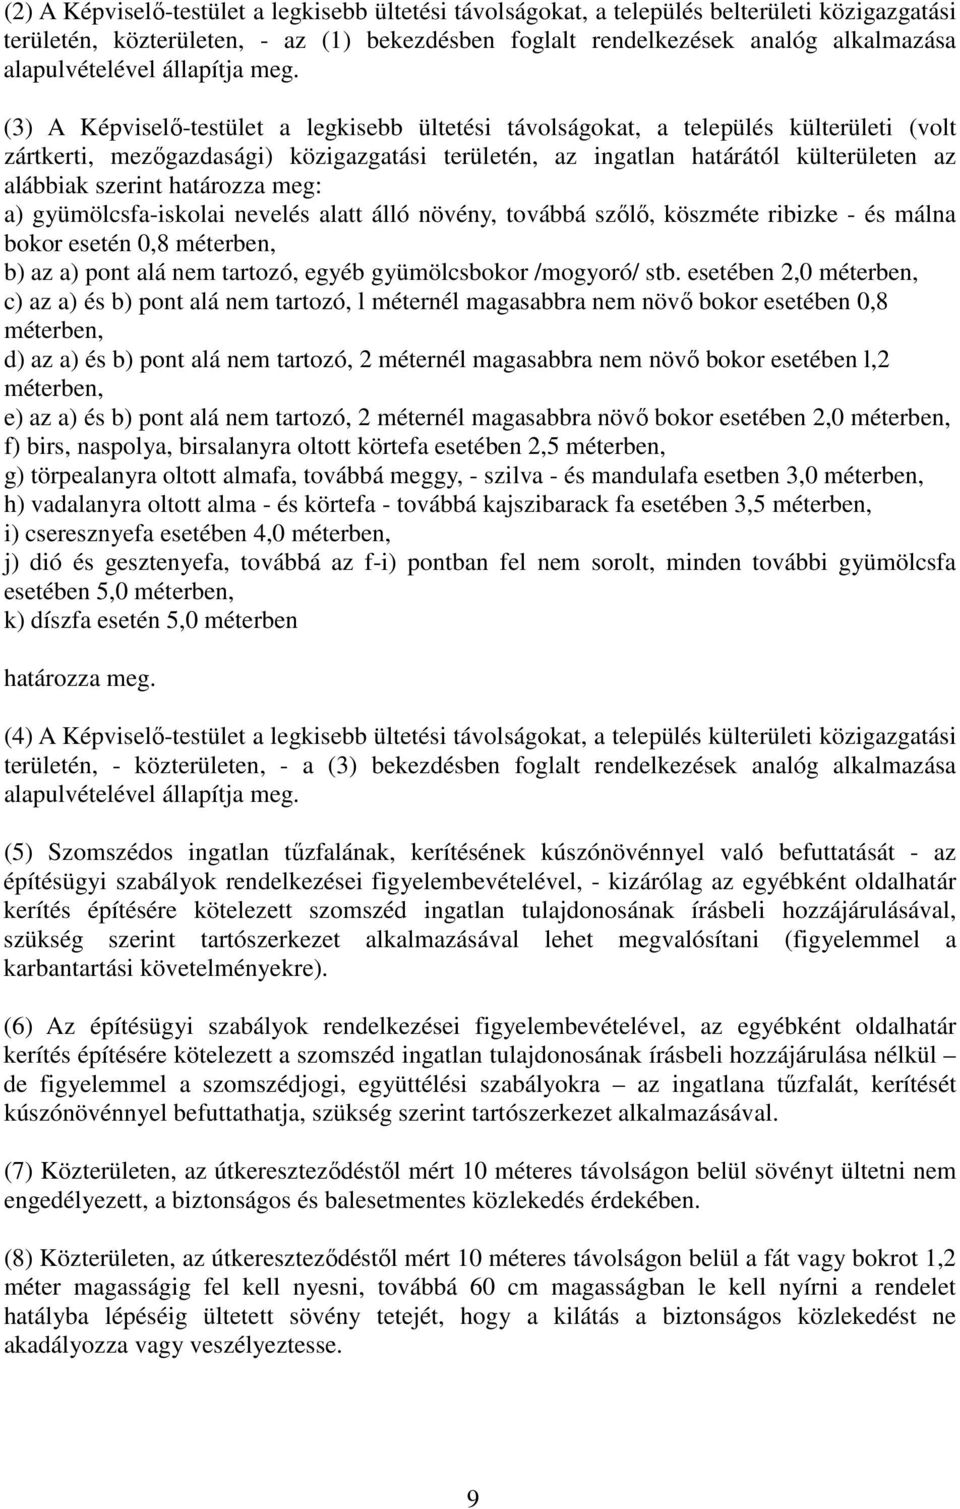 (3) A Képviselı-testület a legkisebb ültetési távolságokat, a település külterületi (volt zártkerti, mezıgazdasági) közigazgatási területén, az ingatlan határától külterületen az alábbiak szerint